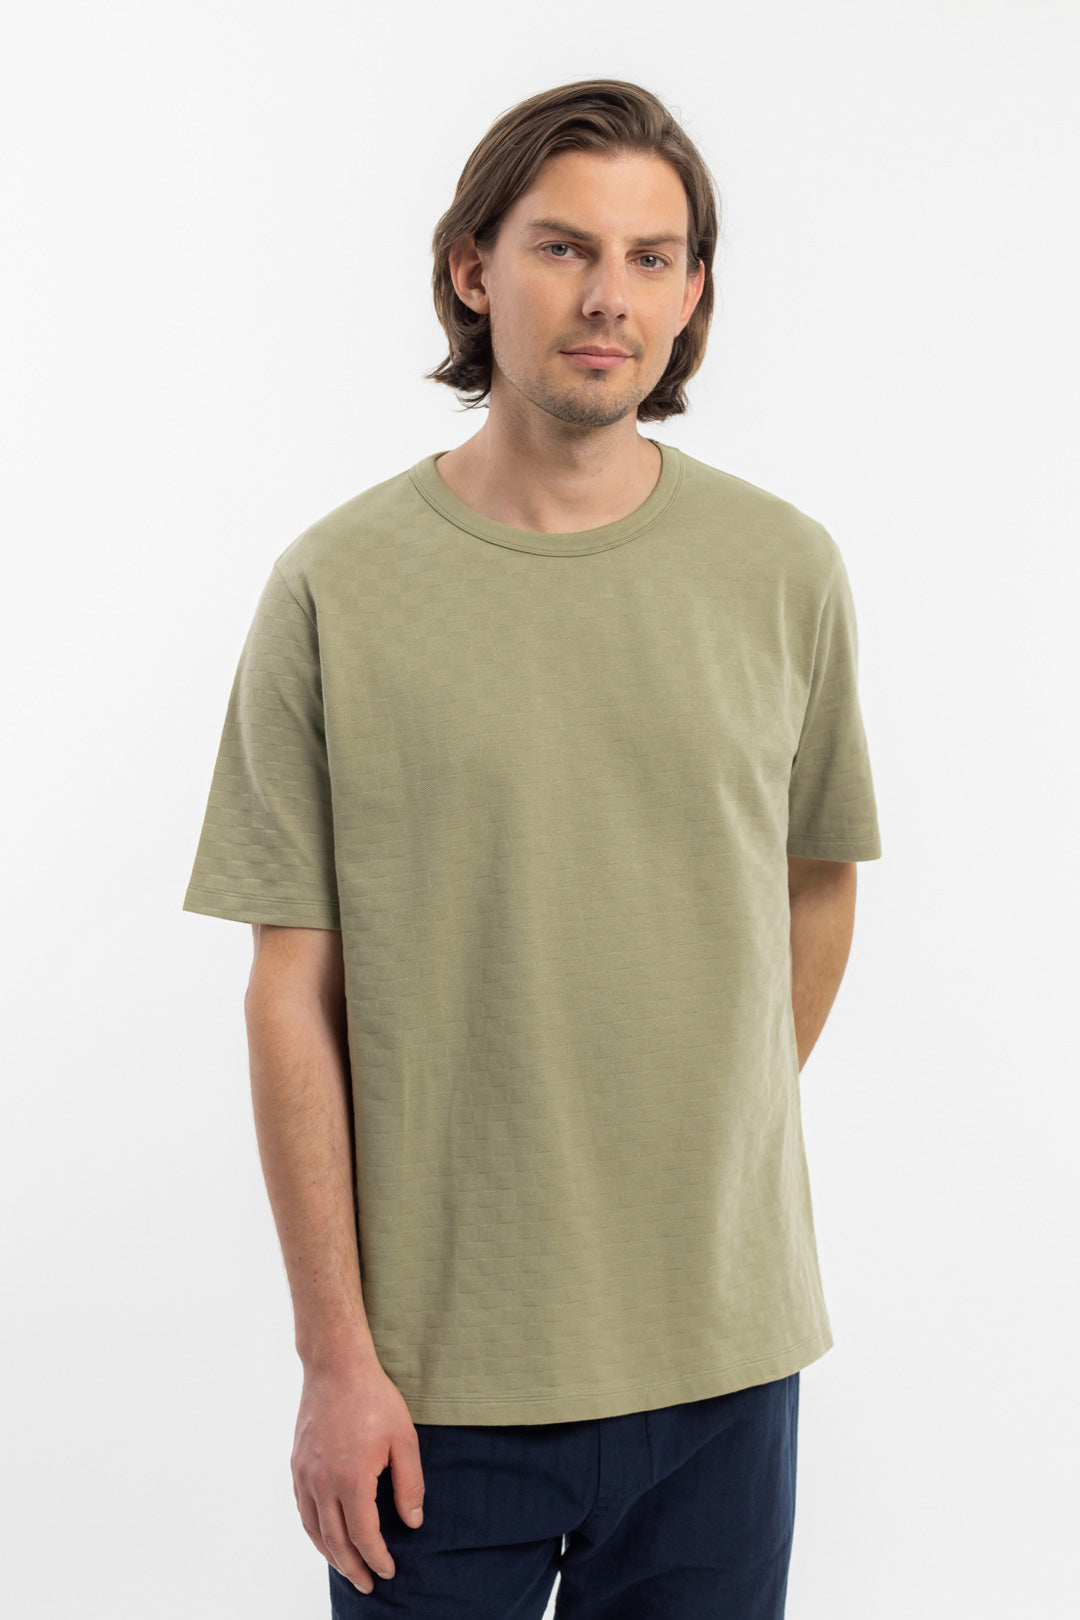 Grünes T-Shirt aus 100% Bio-Baumwolle von Rotholz